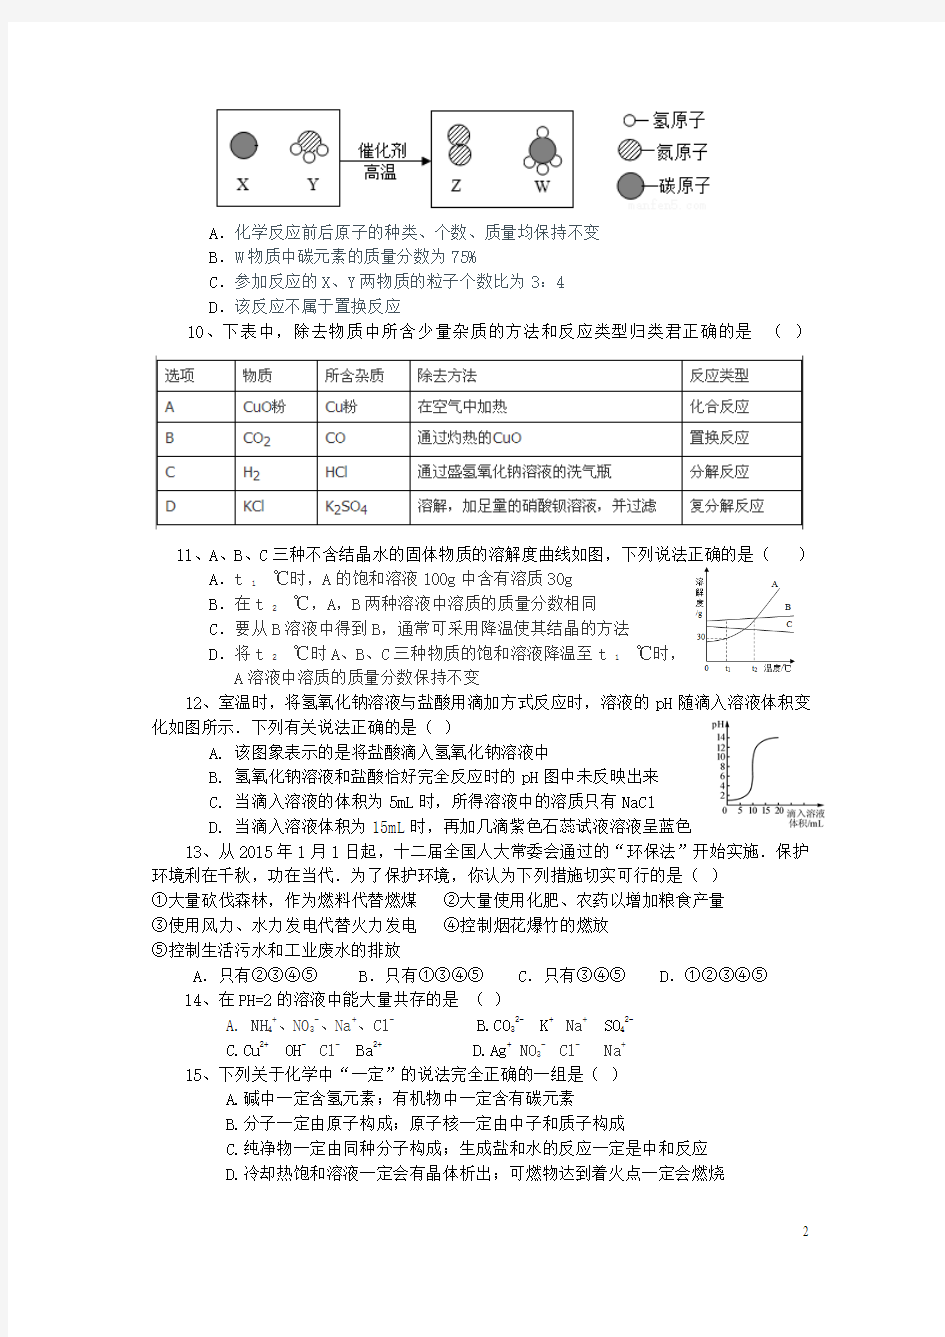 重庆市江北区2016年中考化学适应性考试试题(无答案)概要